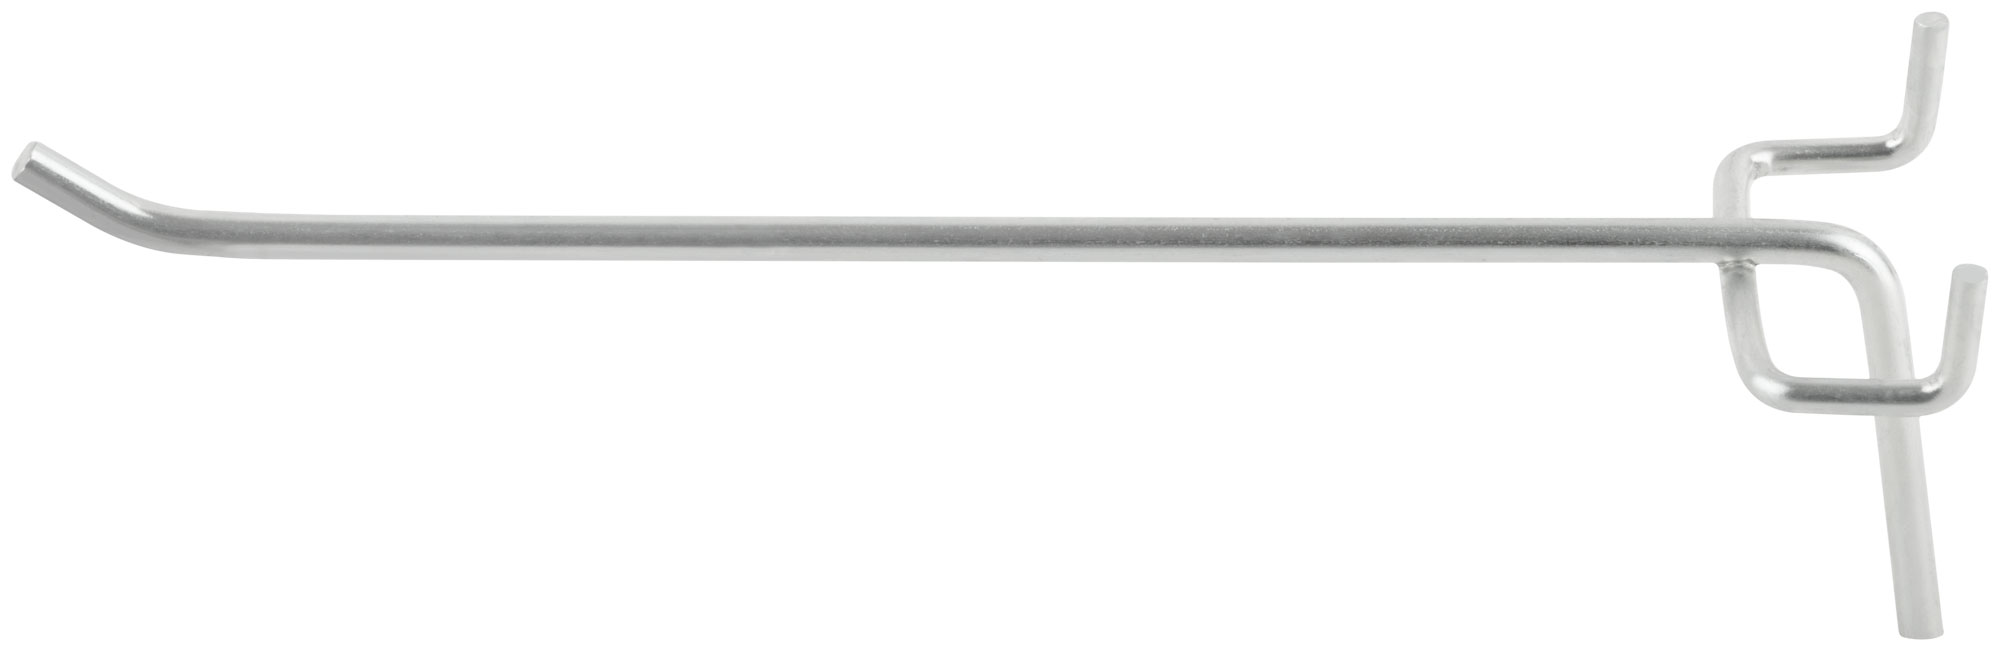 Крюк для стенда одинарный оцинкованный 200 мм